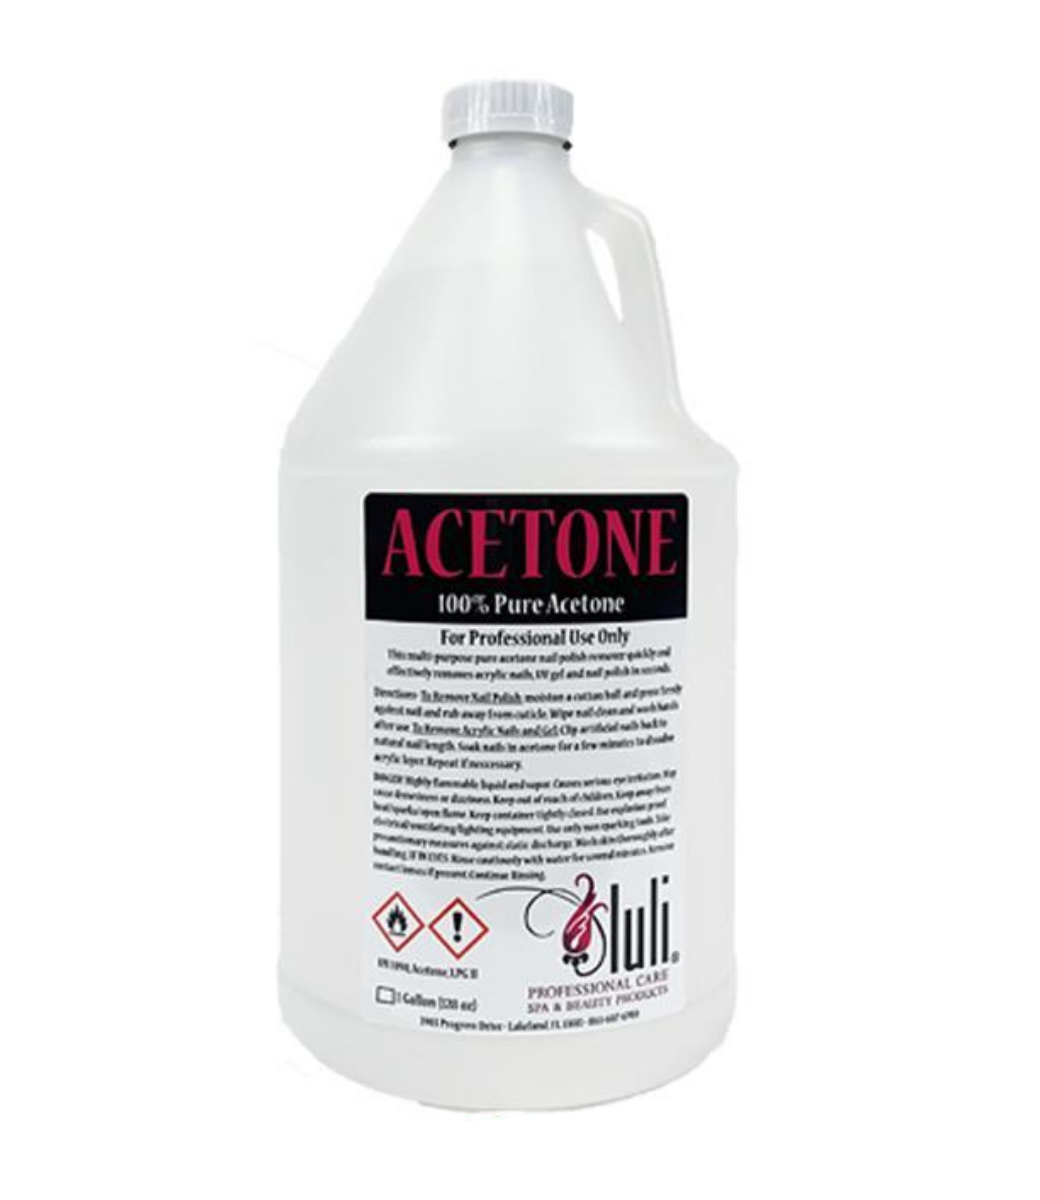 LULI - Acetone 100% Pure 1 Gallon